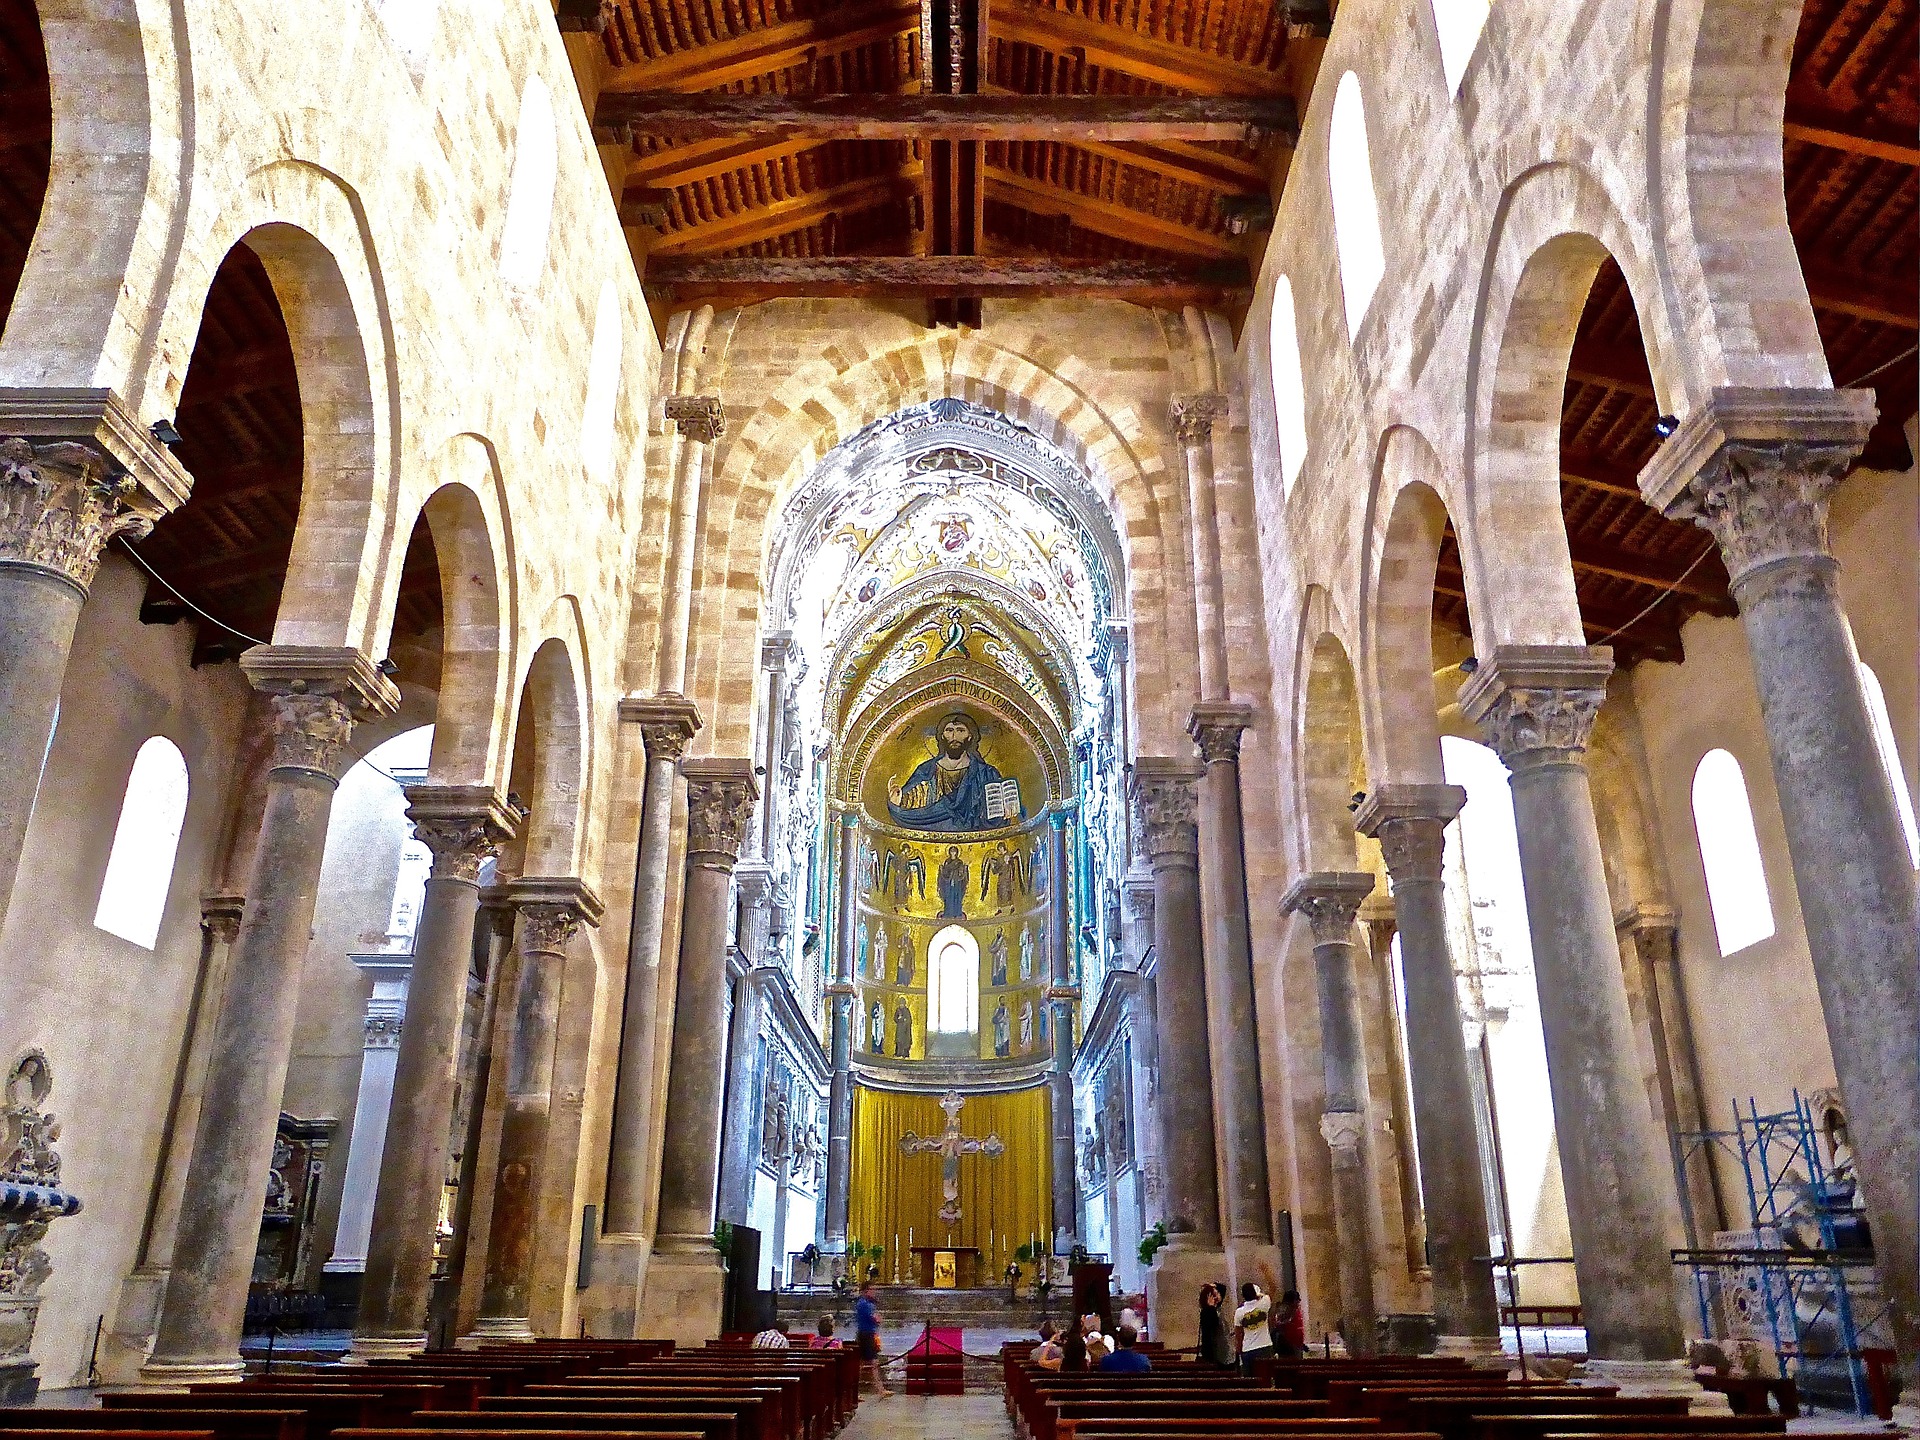 Cattedrale di Cefalù